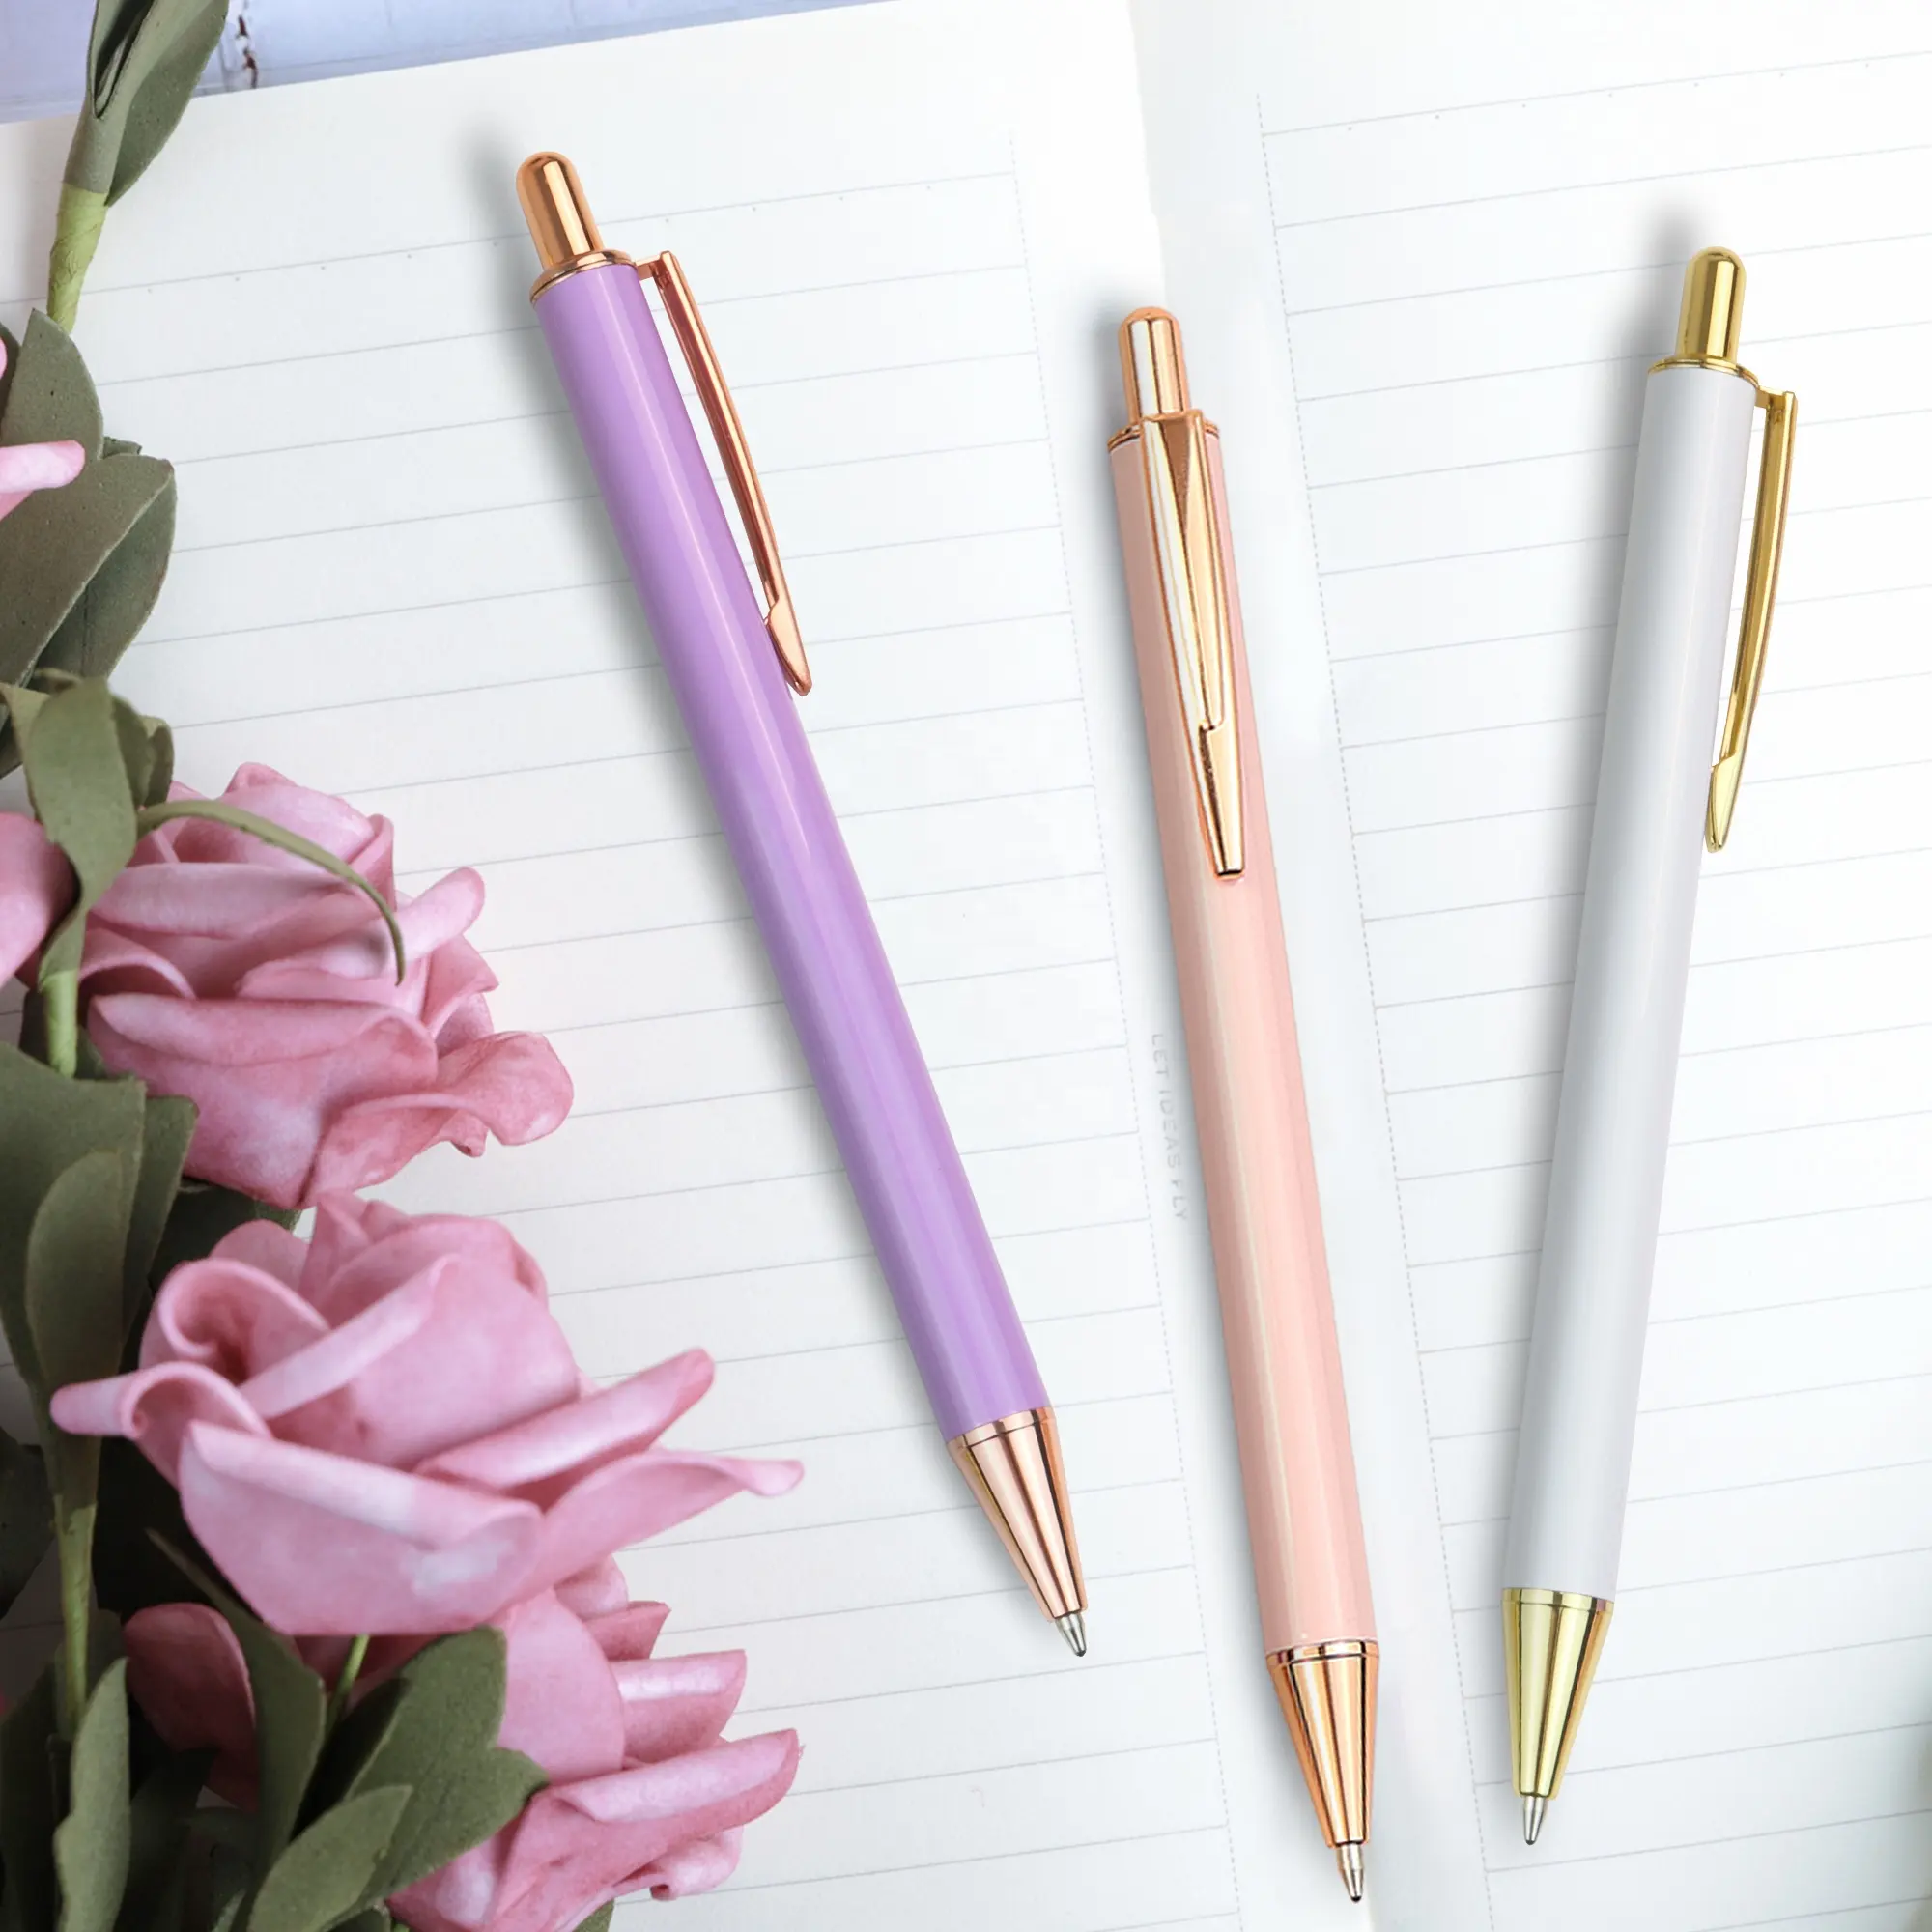 custom logo metal ballpoint pens with gift box luxury inspirational pen set for women gift